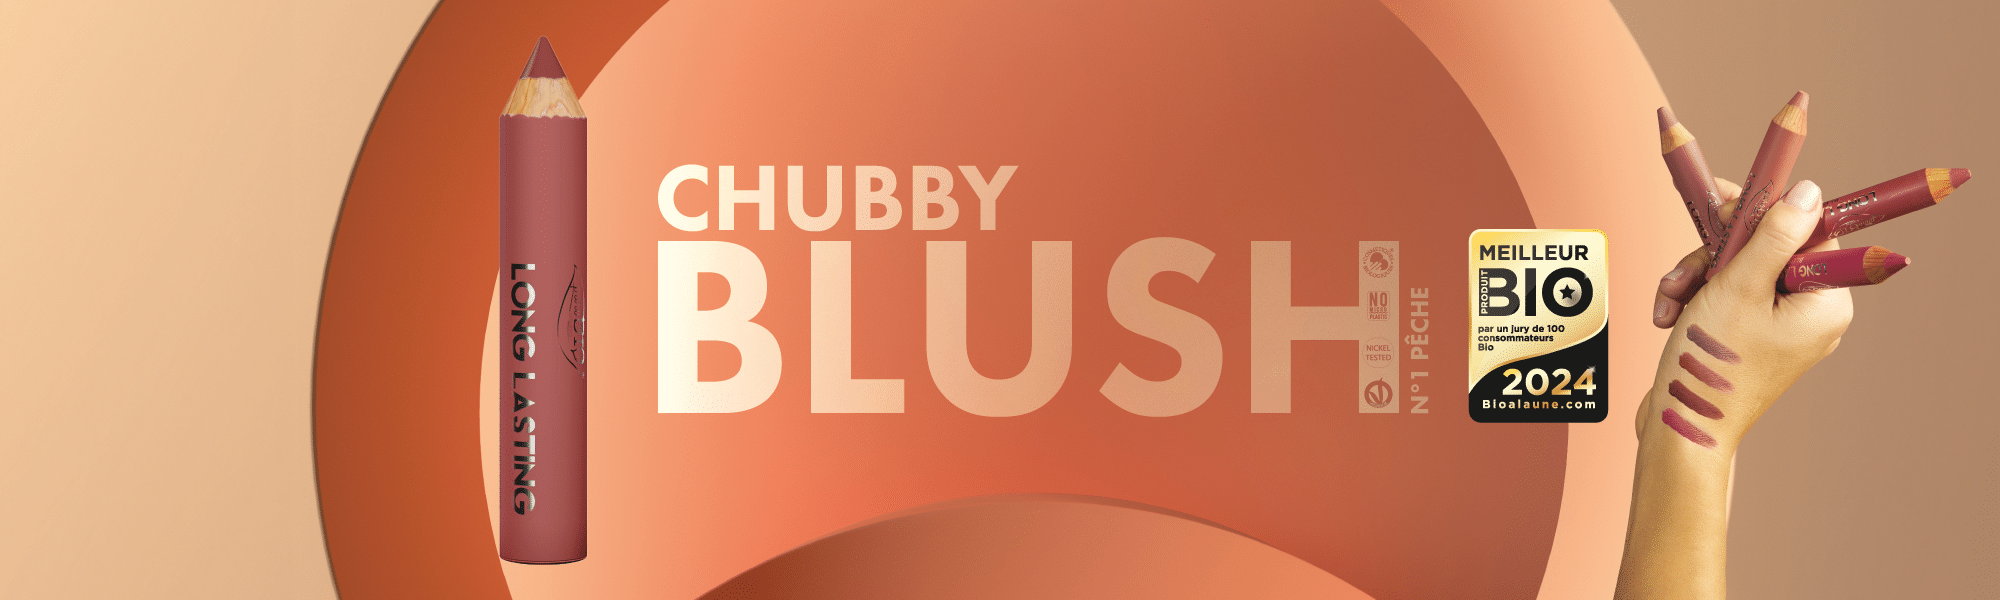 meilleur produit bio 2024 pour le chubby blush purobio